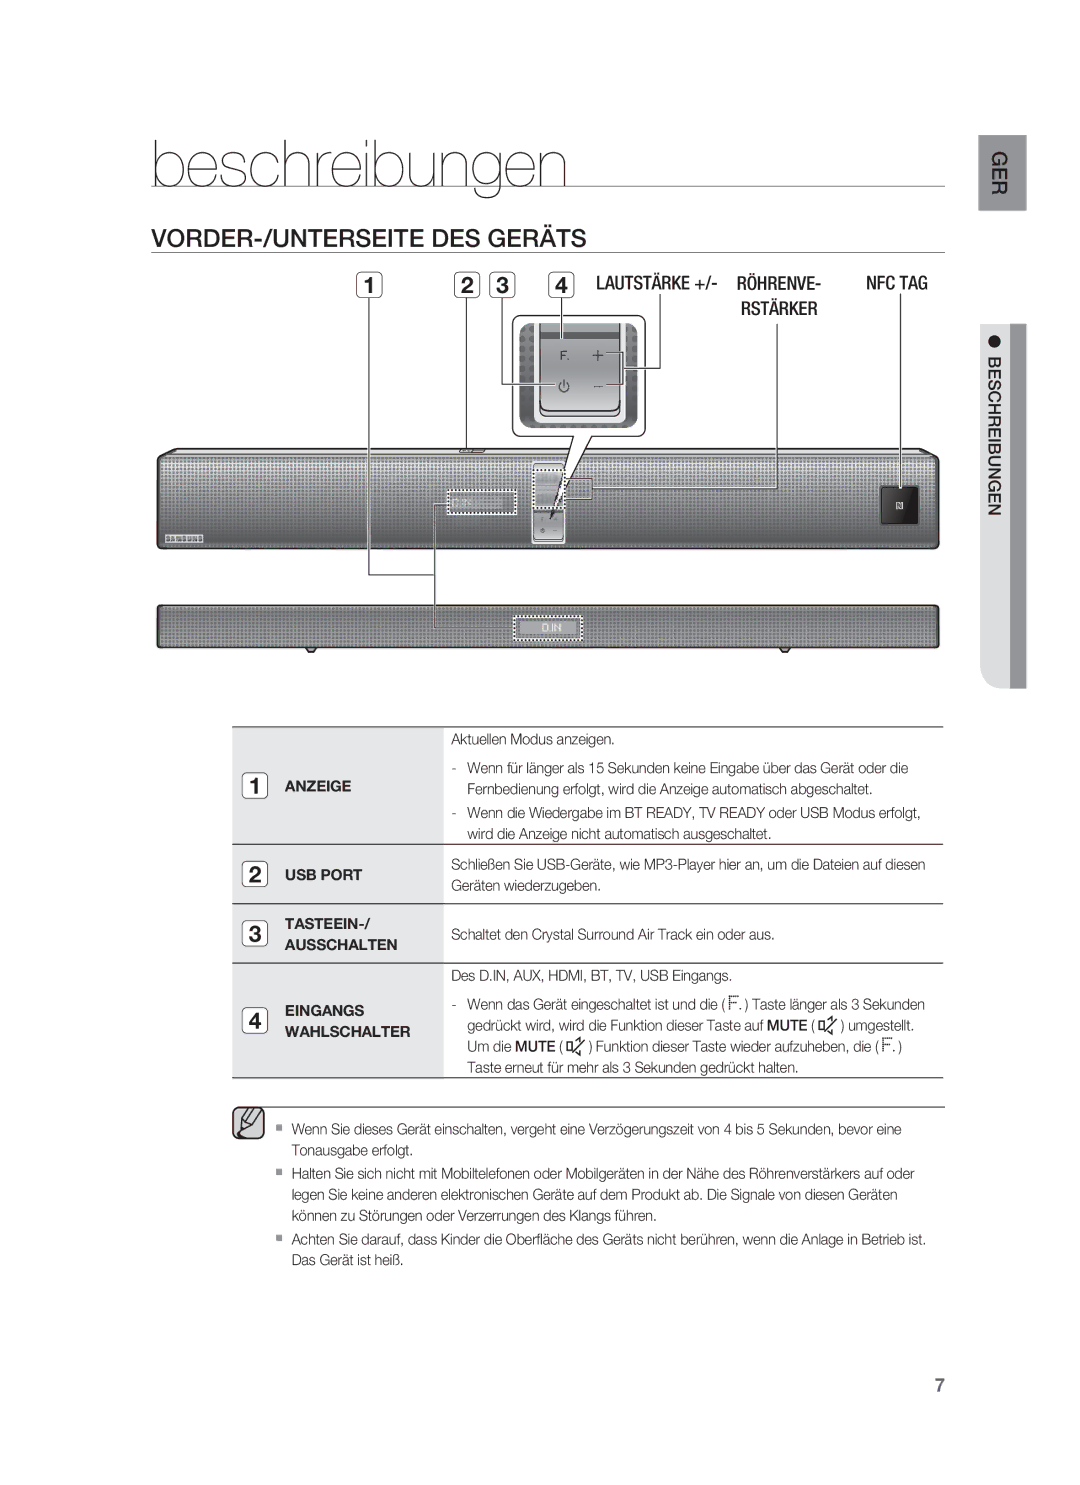 Samsung HW-F850/EN, HW-F850/ZG manual Beschreibungen, VORDER-/UNTERSEITE DES Geräts 